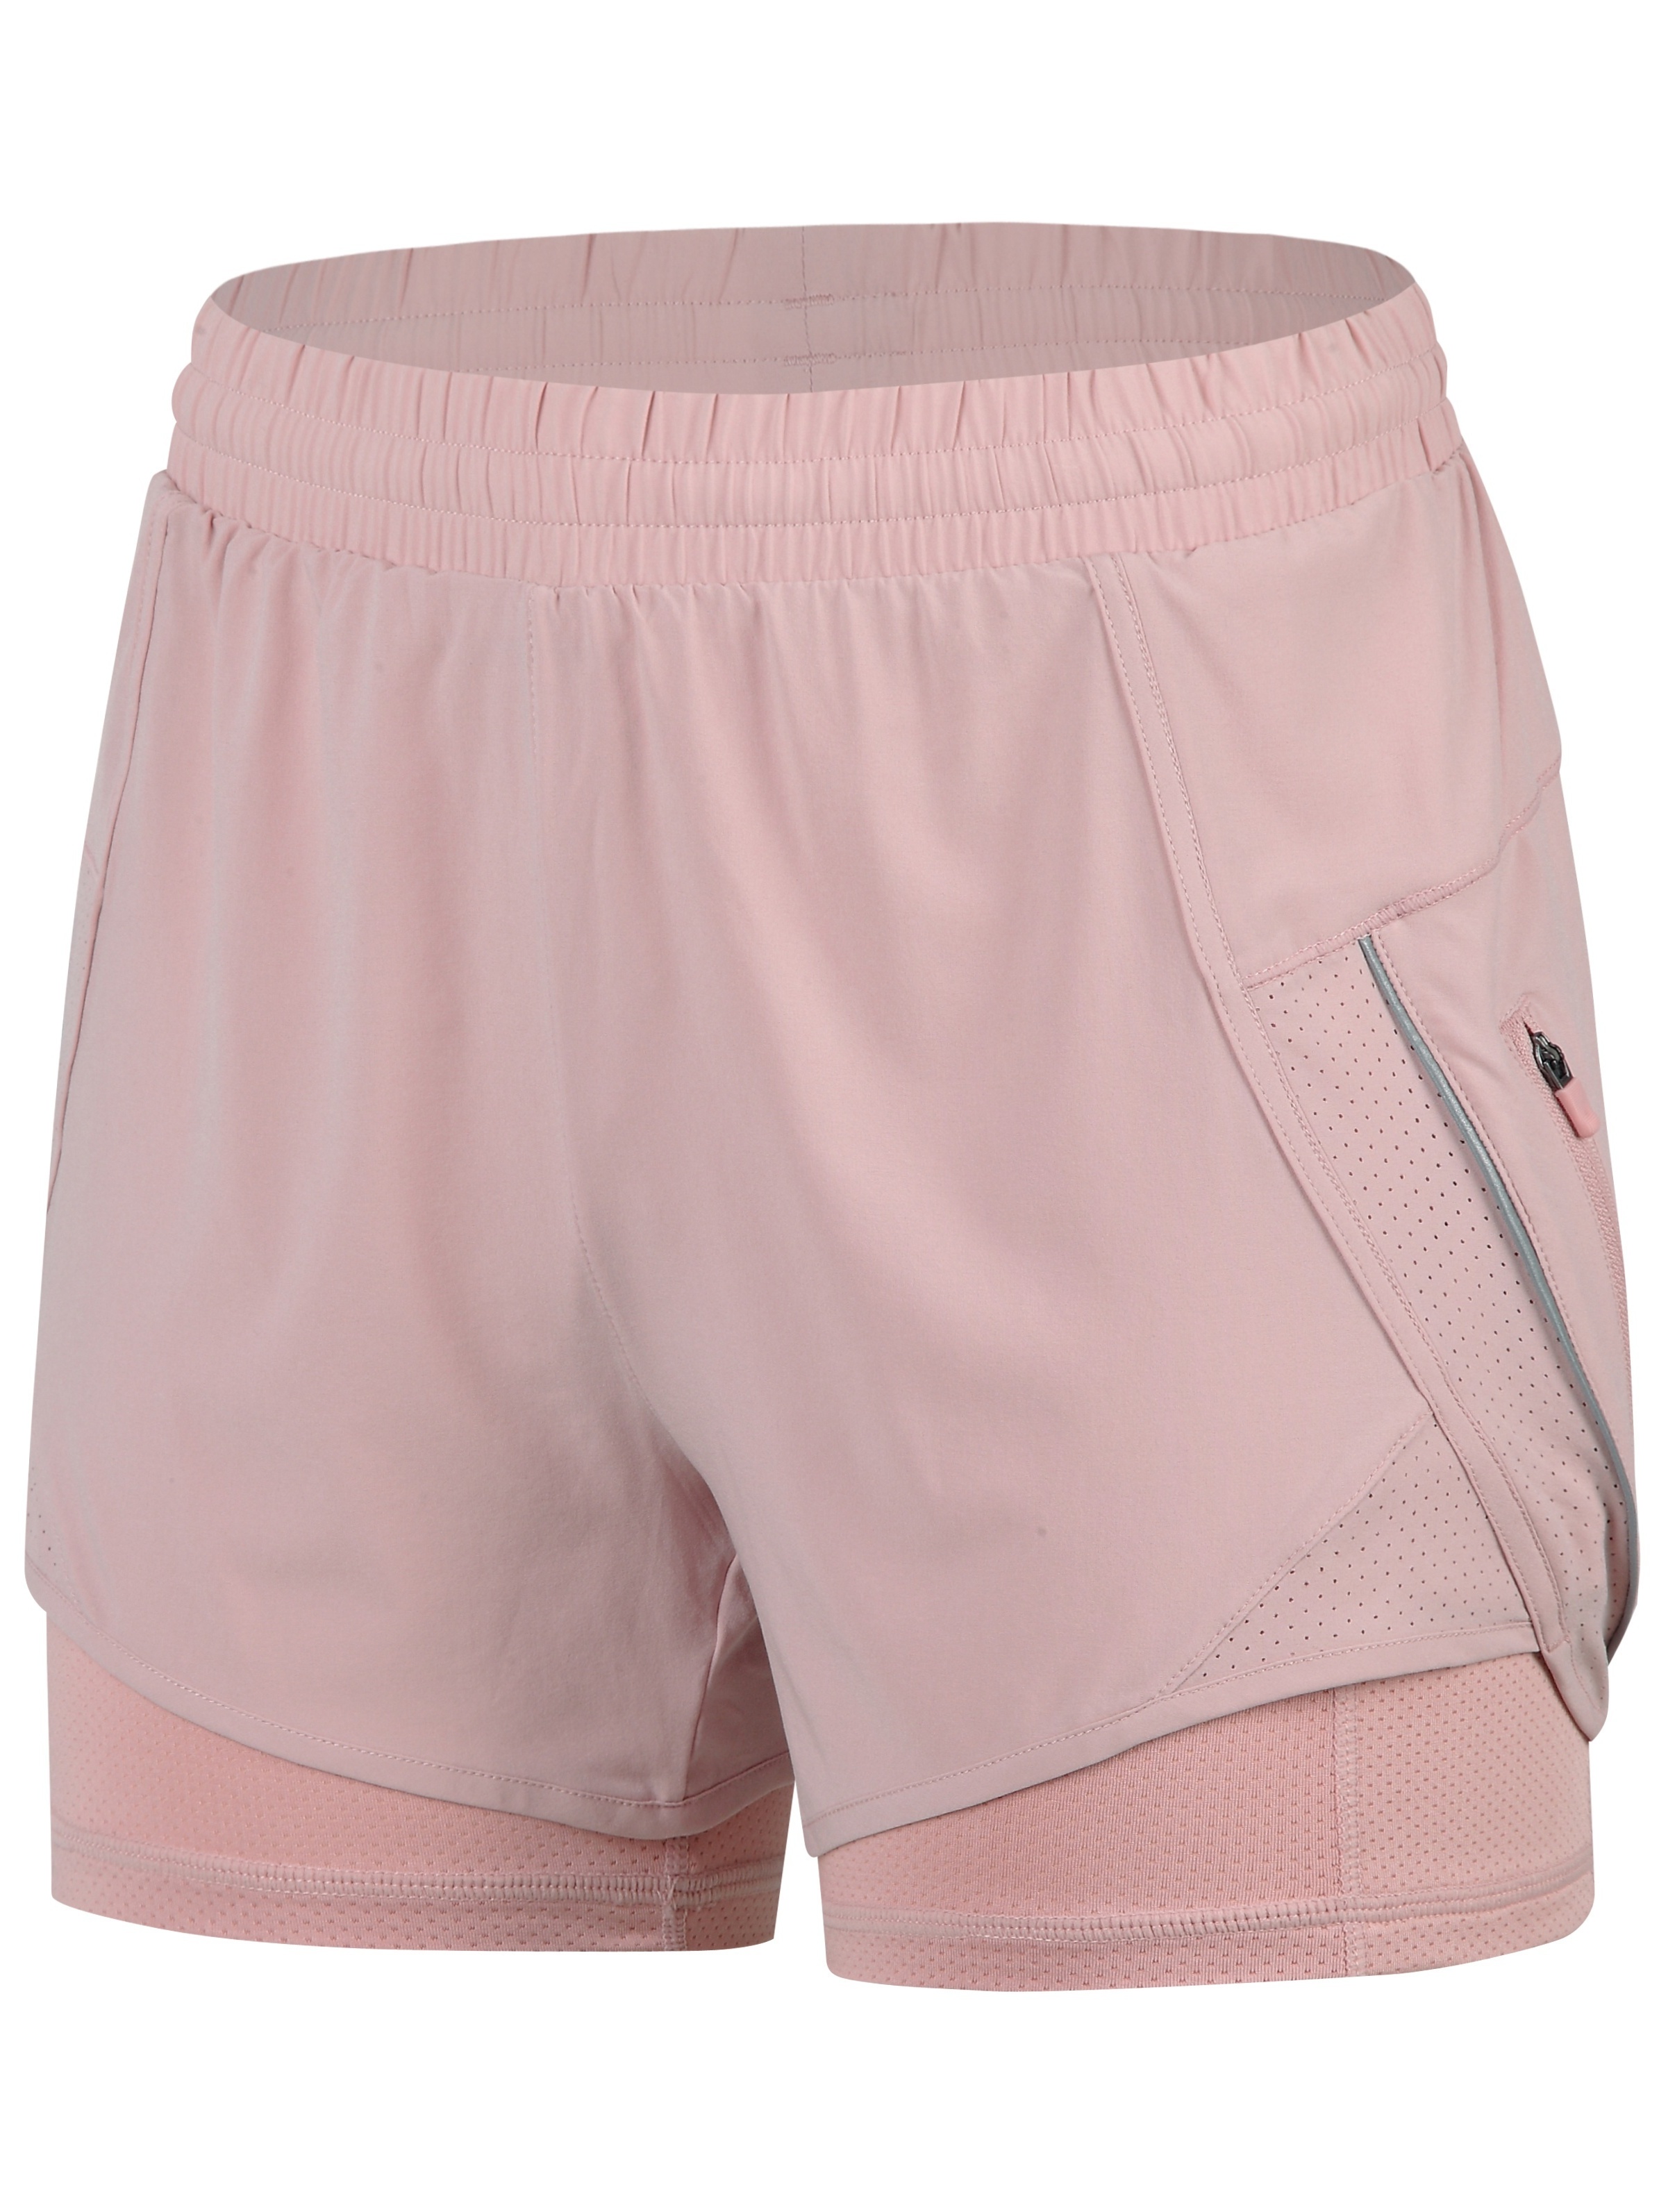 Pantalones deportivos para mujer, para correr, ejercicio, deporte,  gimnasio, caminar, color rosa, talla M, Rosado